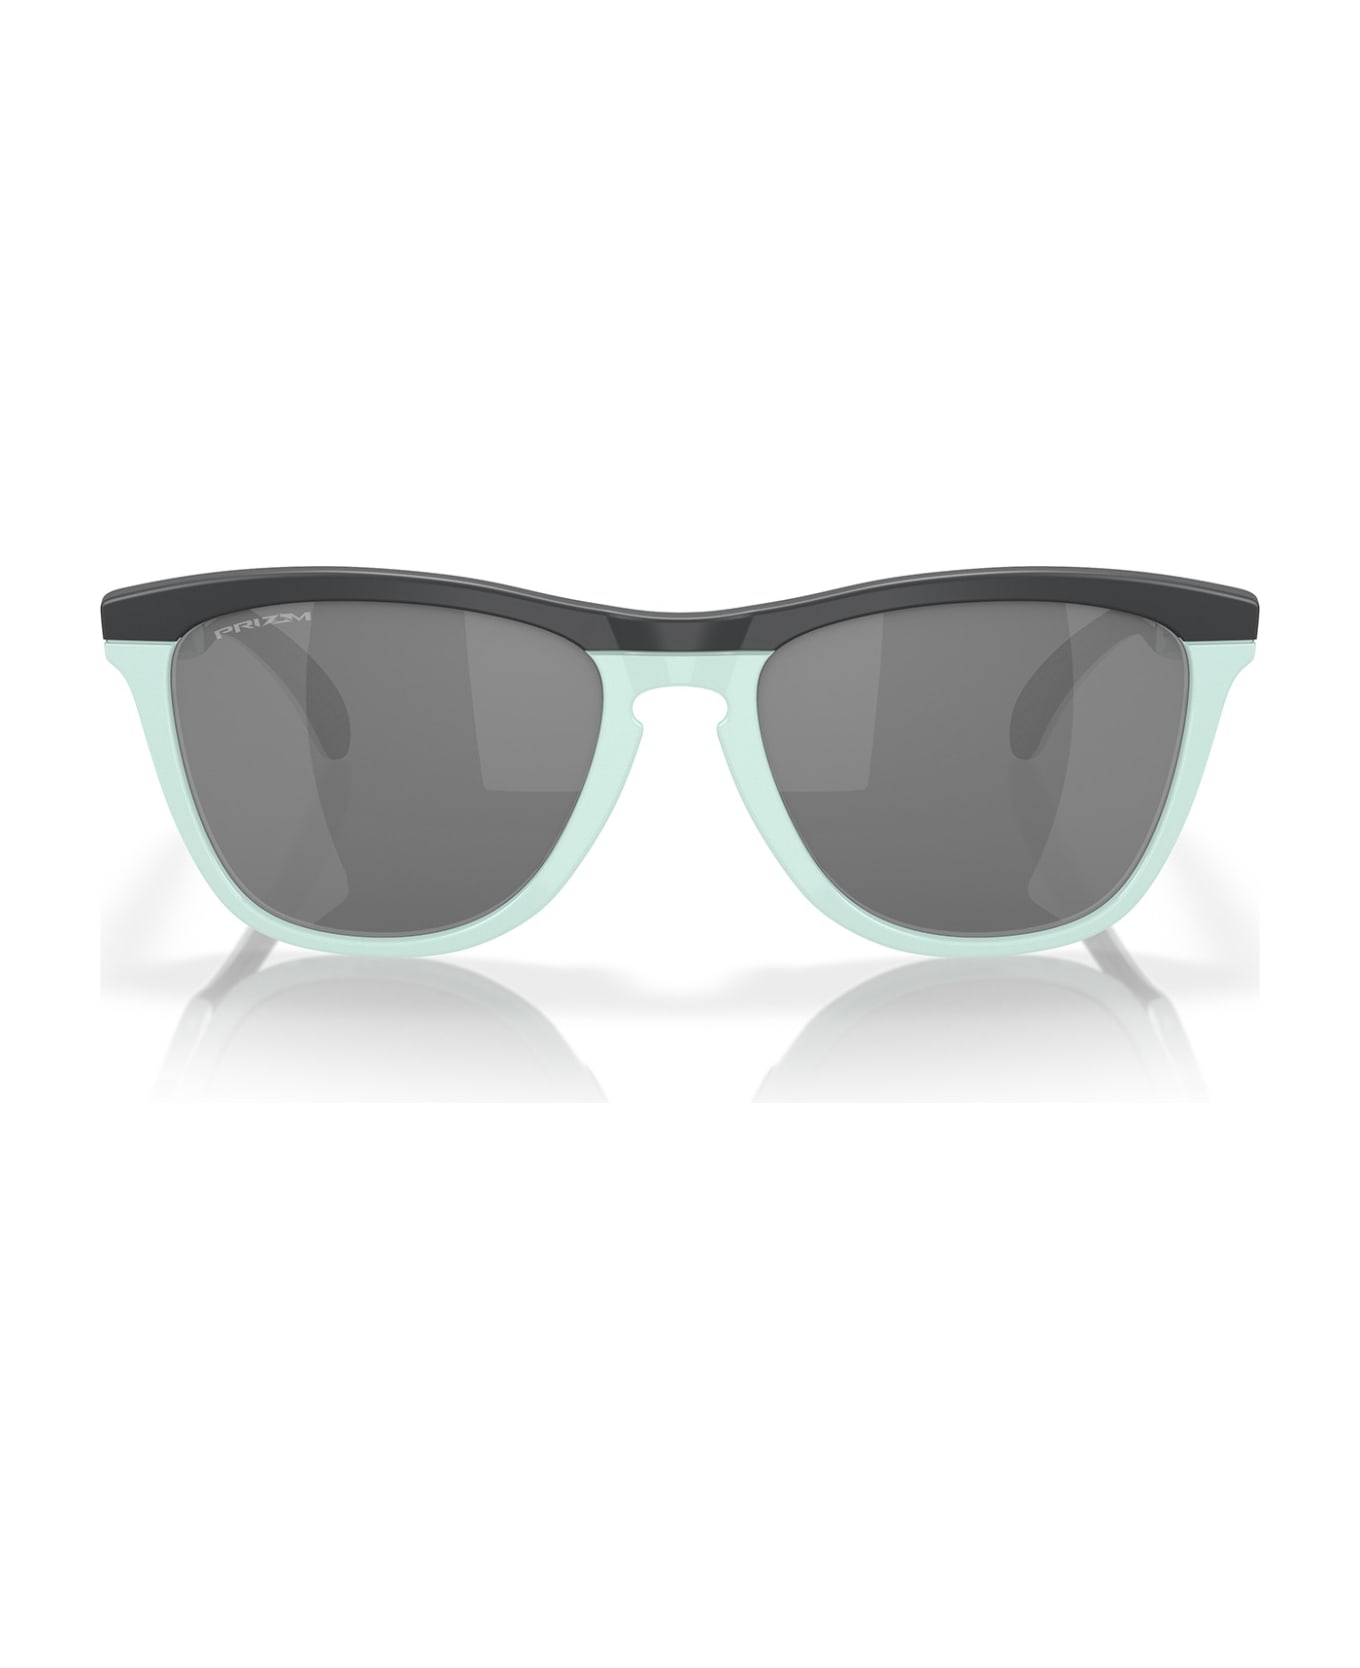 Oakley Oo9284 Matte Carbon / Blue Milkshake Sunglasses - Matte Carbon / Blue Milkshake サングラス